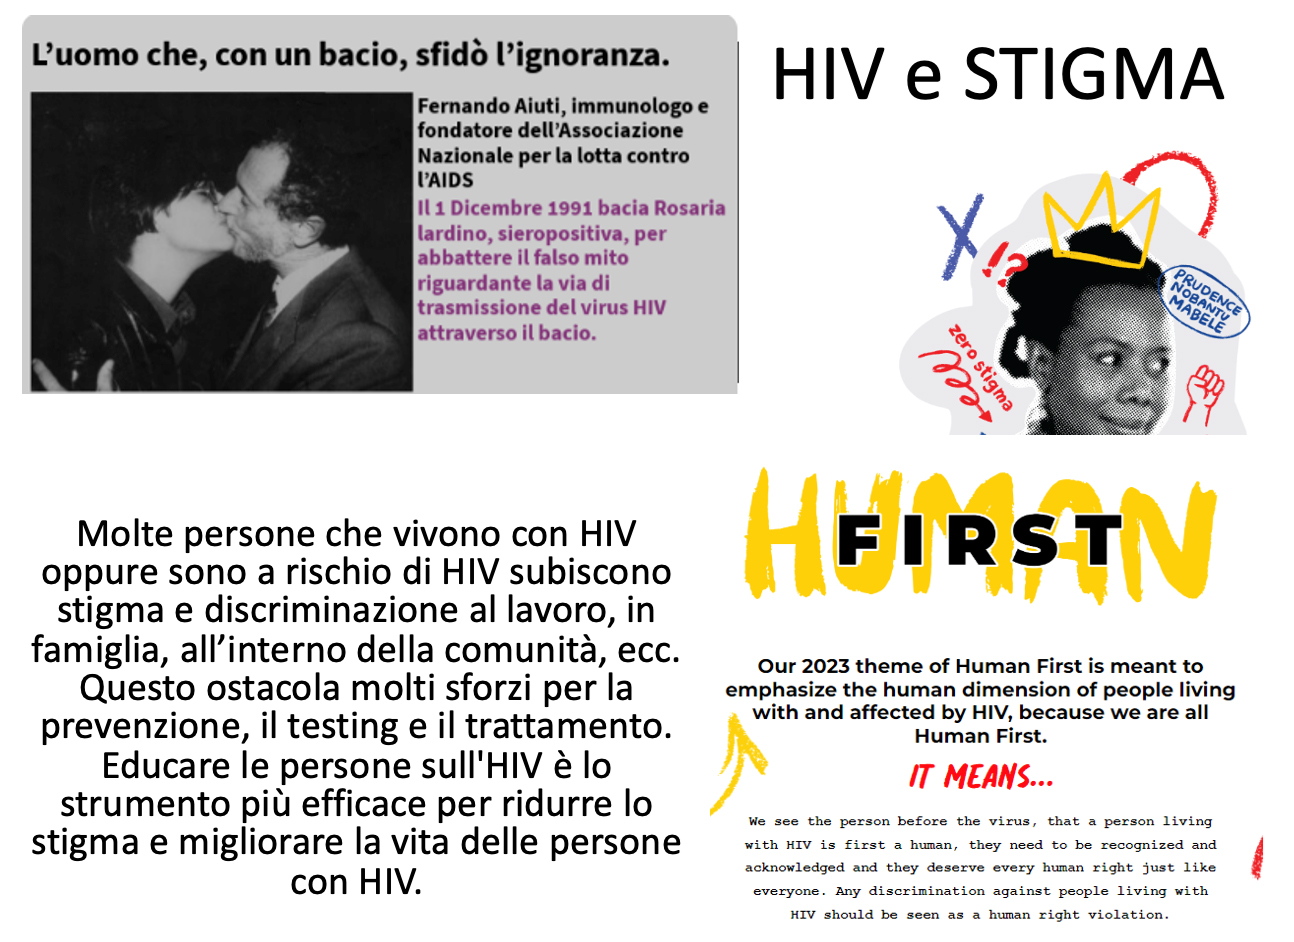 HIV e stigma. Fonte immagine: Dr.ssa Paola Pauri